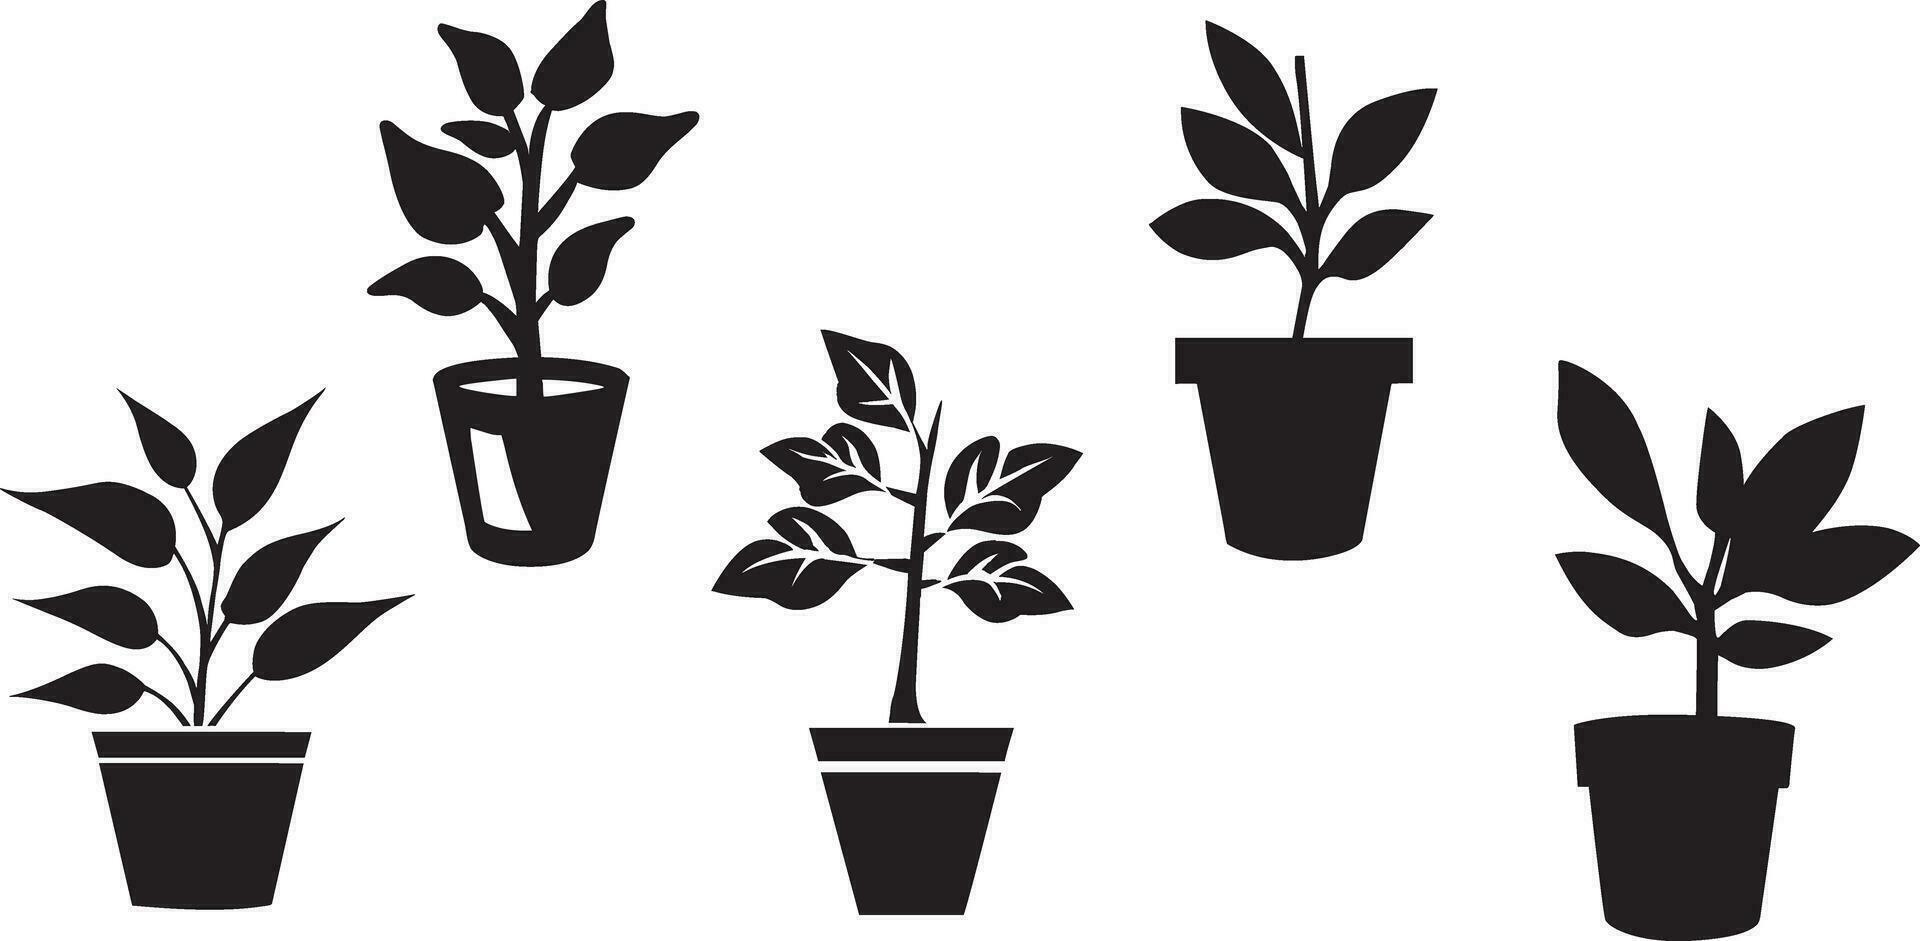 zwart en wit ingemaakt fabriek pictogrammen set. reeks van ingemaakt fabriek silhouetten. planten in potten. ingemaakt fabriek vectoren